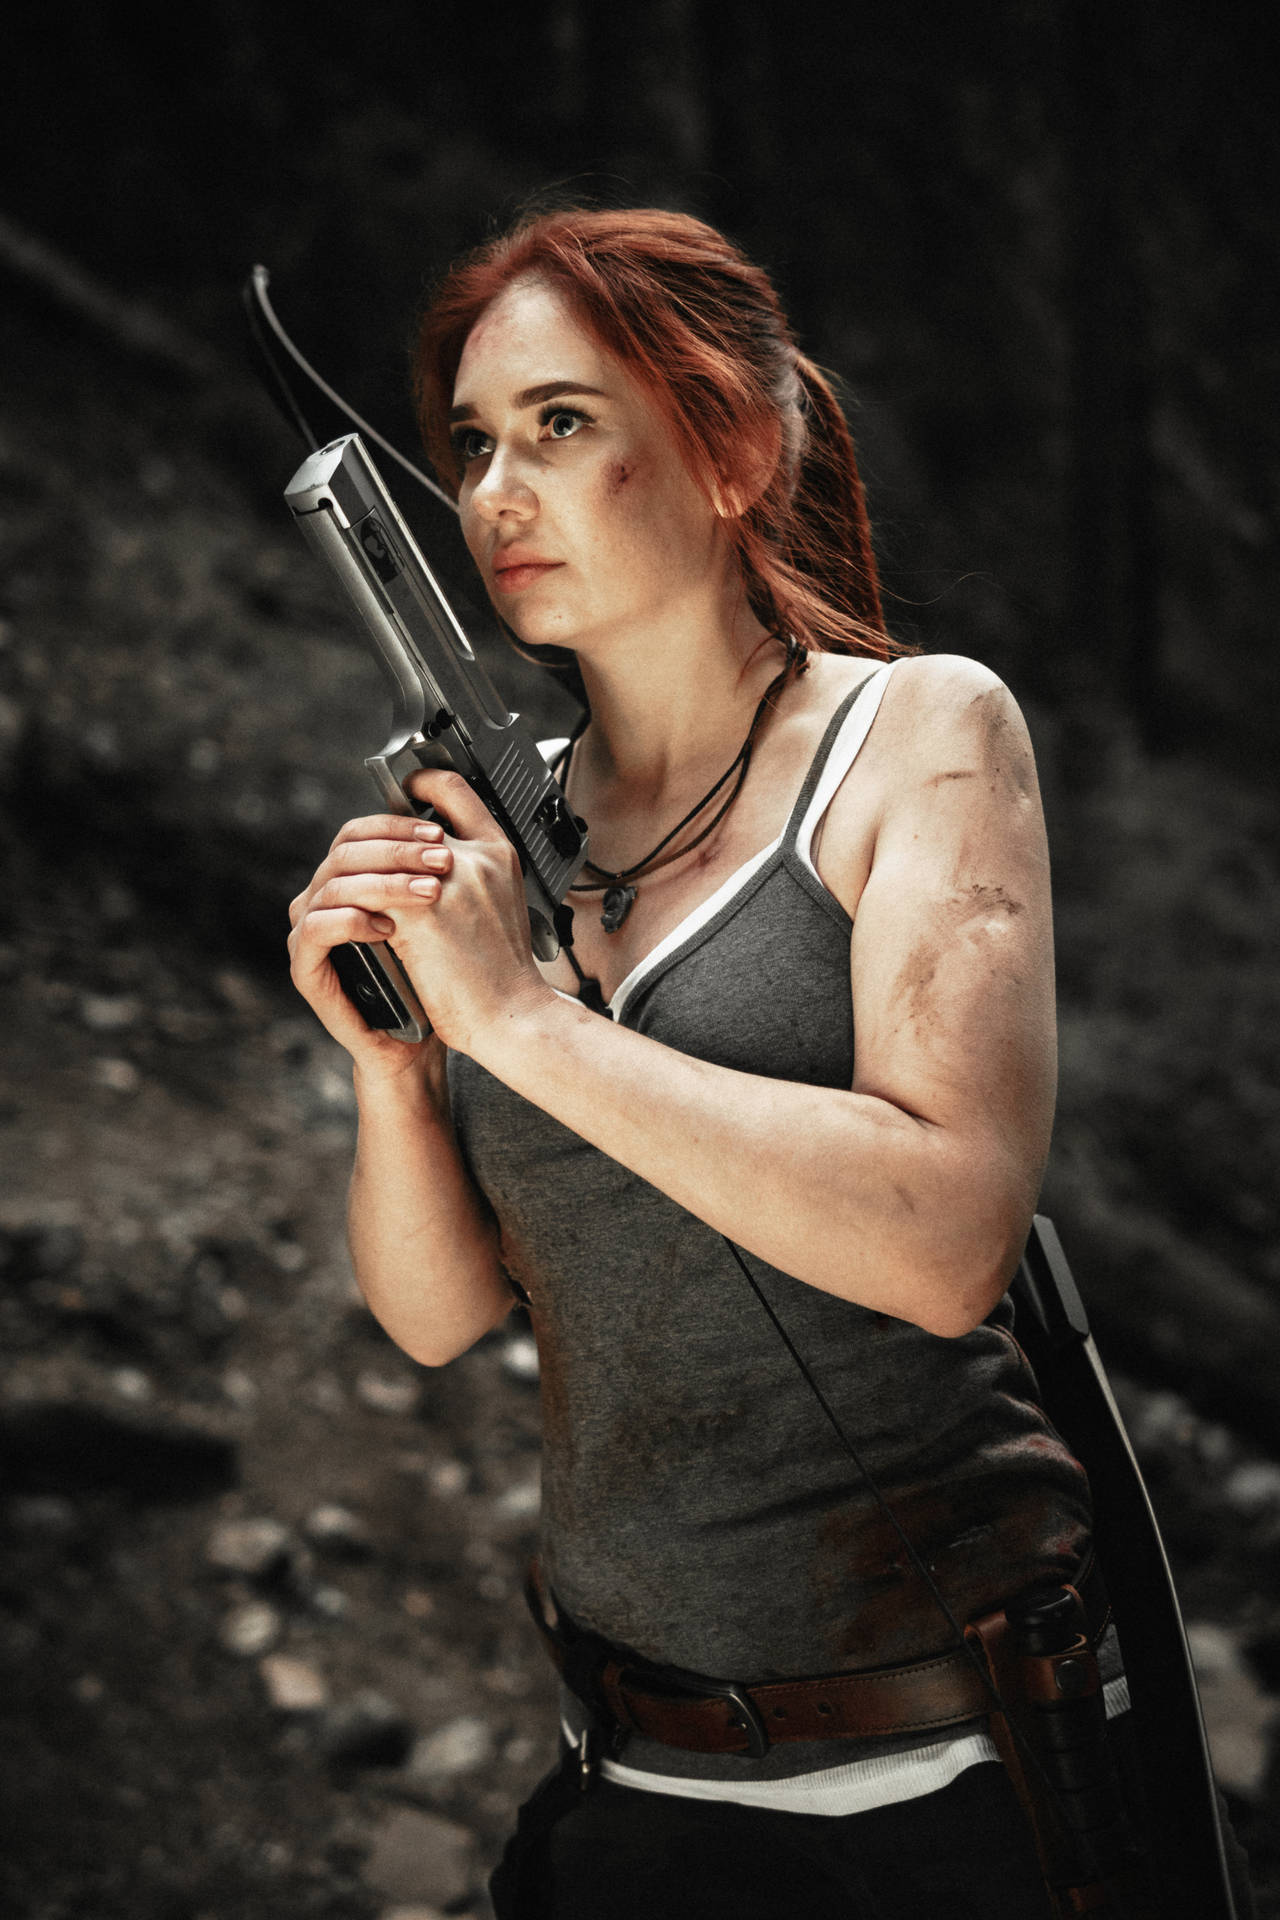 Lara Croft Cosplay With Gun Background